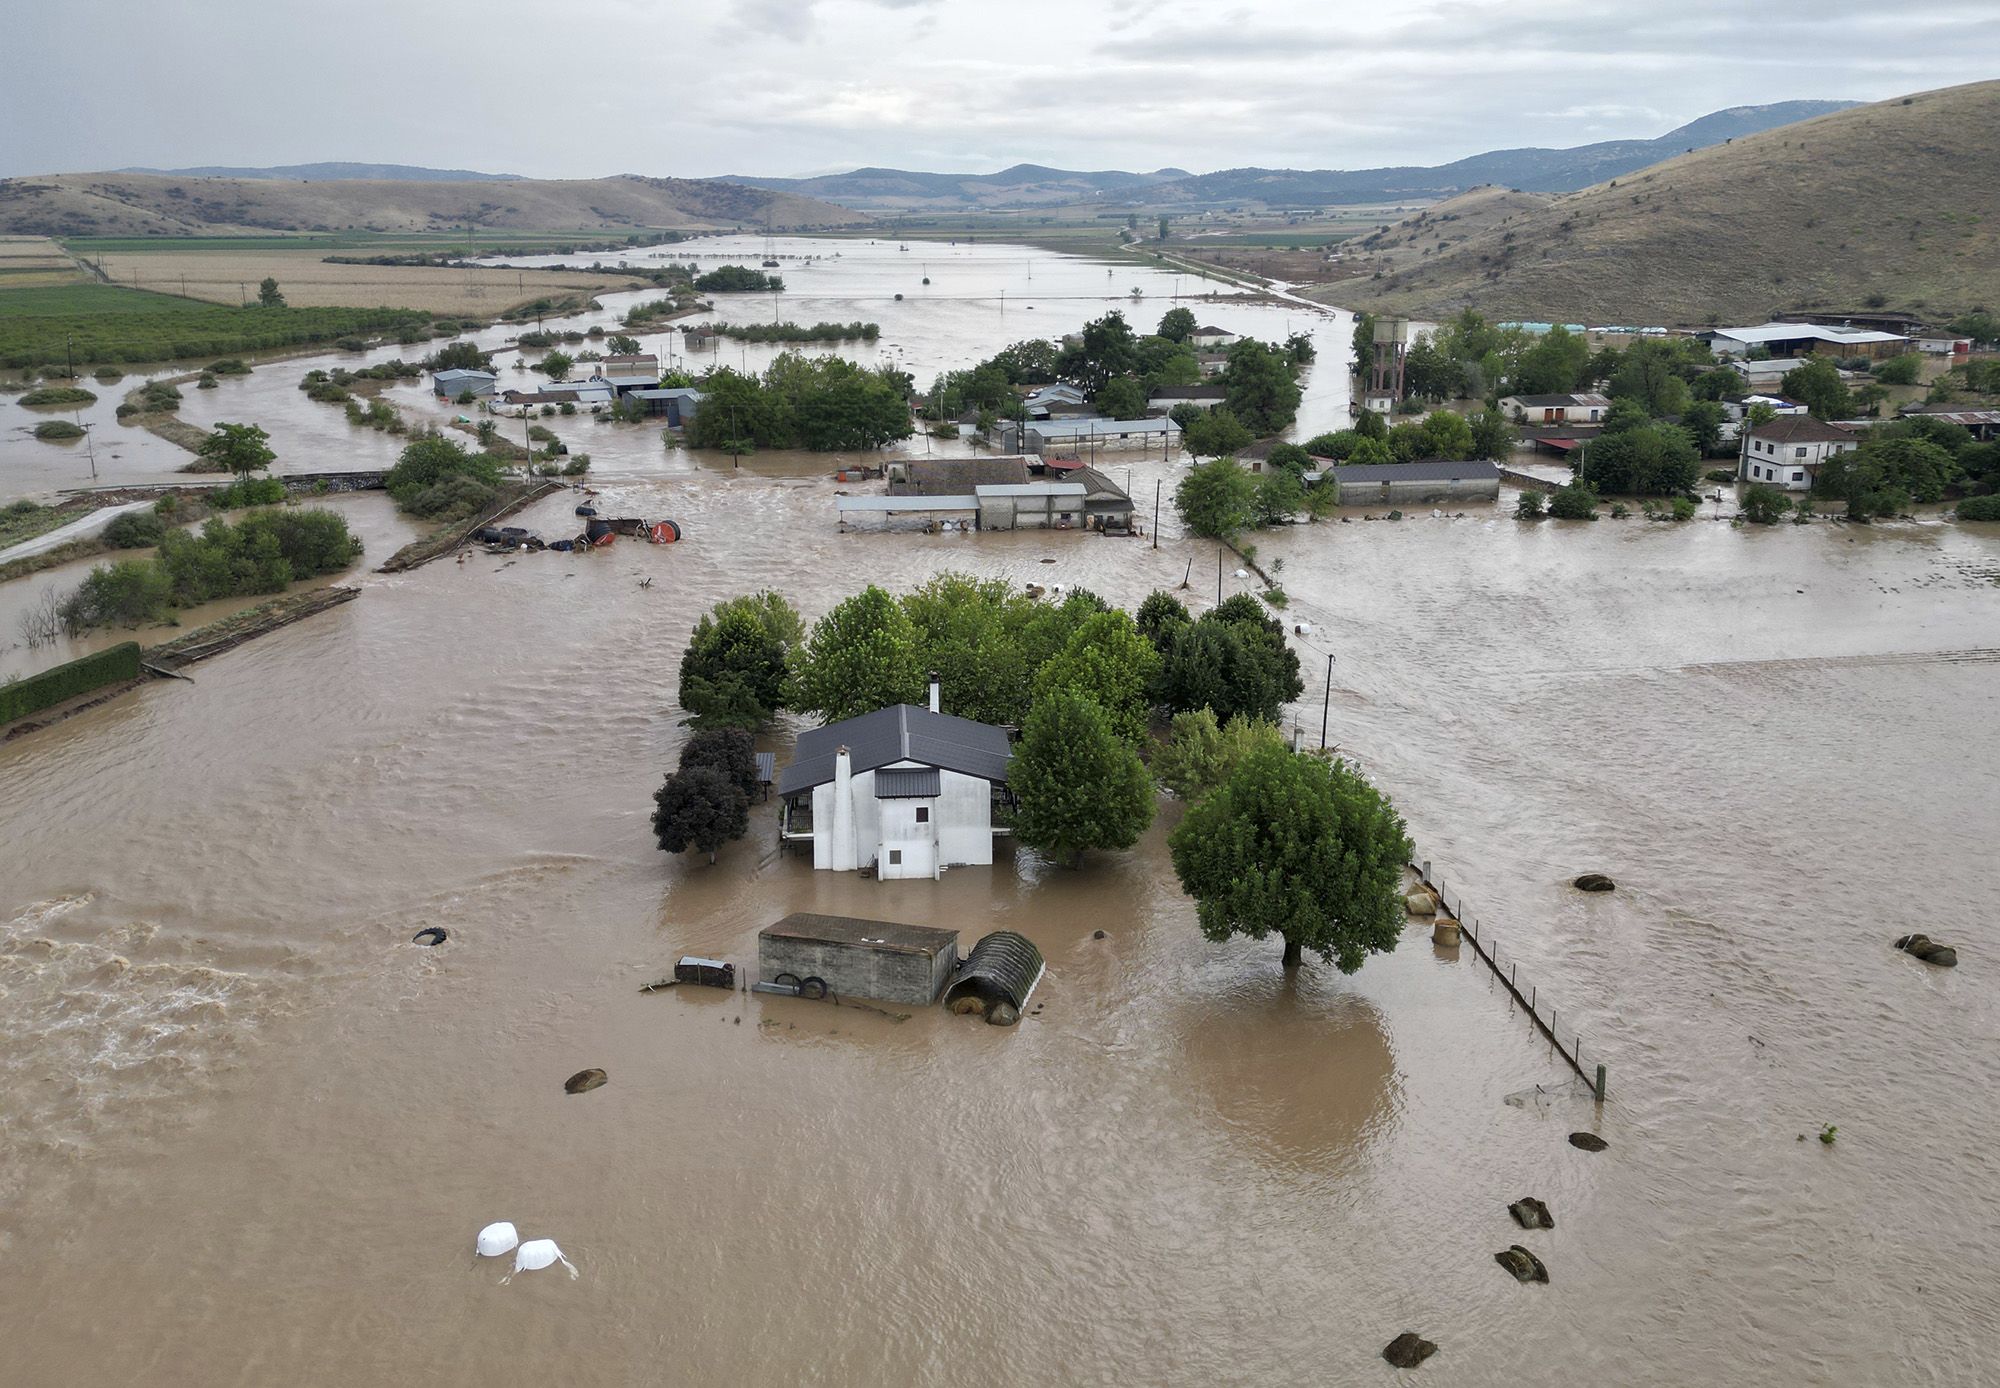 https://media.cnn.com/api/v1/images/stellar/prod/230907160458-05-greece-floods-rescue-operations.jpg?c=original